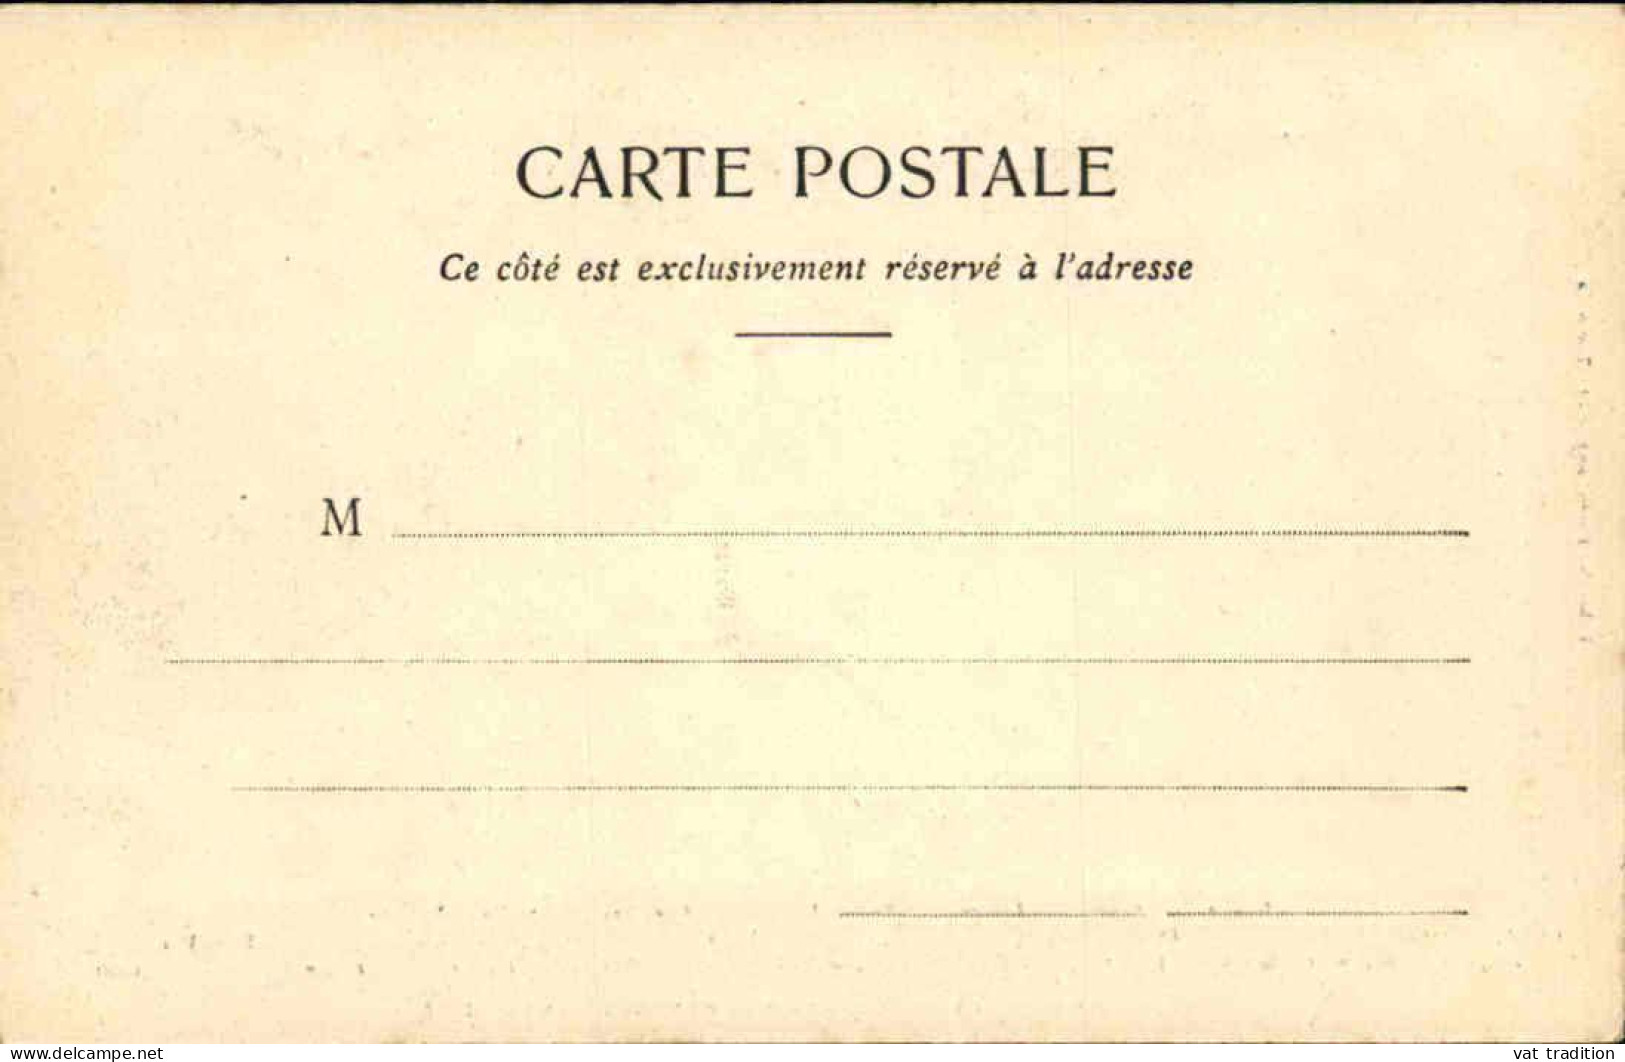 MILITARIA - Carte Postale Des Officiers Étrangers Aux Manœuvres En 1902 - L 152345 - Manoeuvres